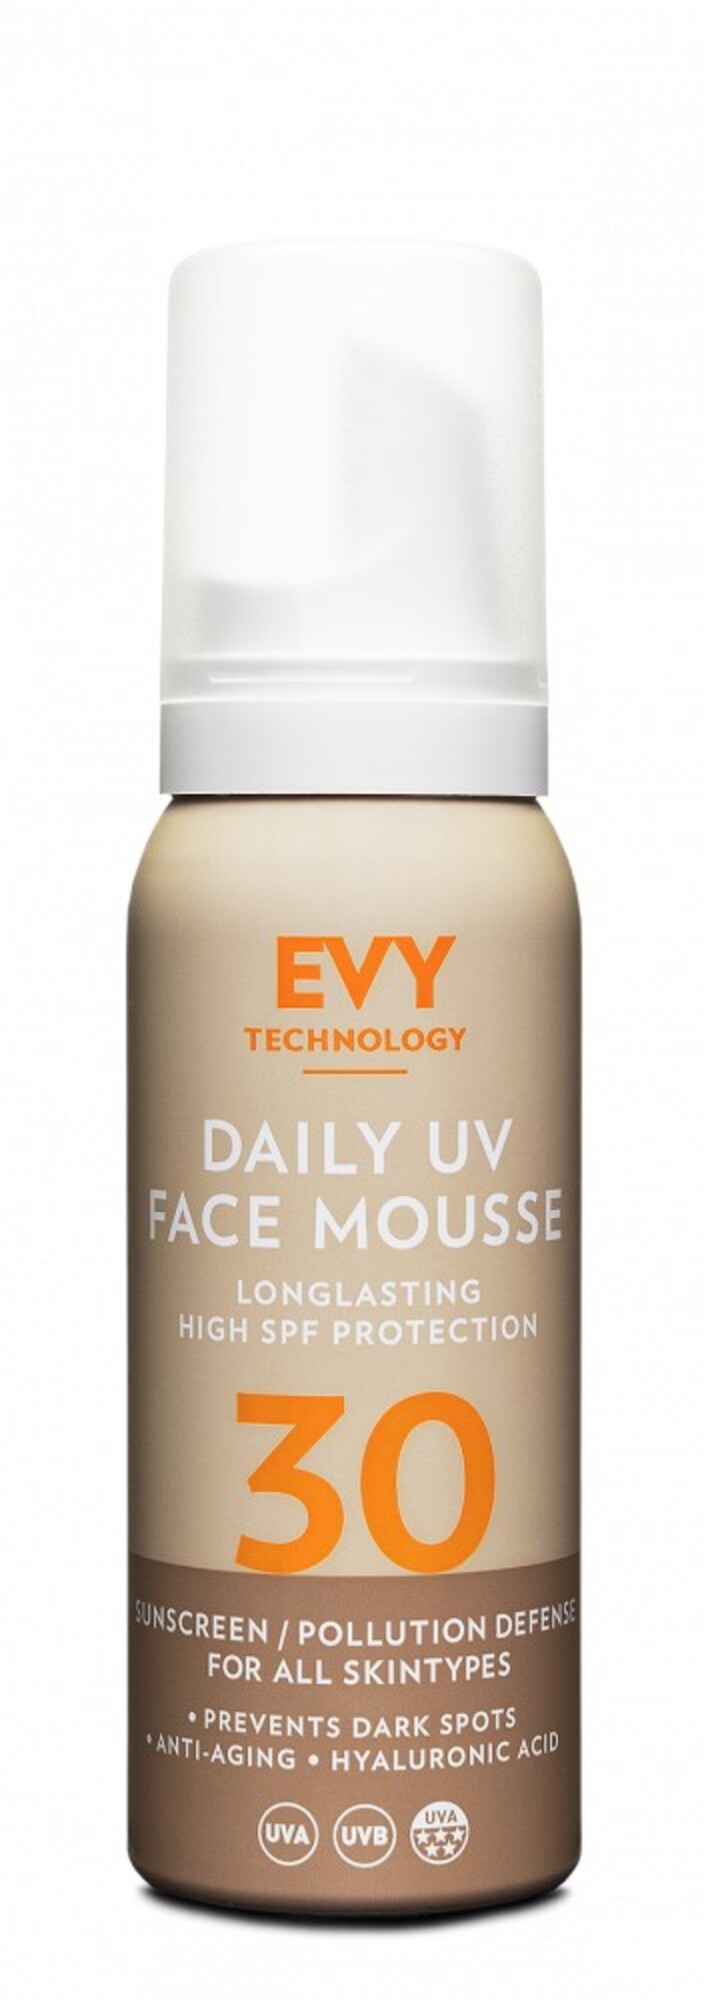 EVY Daily UV Face Mousse SPF 30: Hydratačný krém so slnečnou ochranou, ktorá vydrží až šesť hodín. Hodí sa aj na zimu, hlavne v prípade, že ideš na lyžovačku alebo dovolenku. Výborne chráni pred predčasným starnutím, a keďže obsahuje vitamíny C a E, kyselinu hyalurónovú a kolagén, poslúži aj namiesto hydratačného krému.  Miesto 26,90 € zaplatíš 21,52  €.